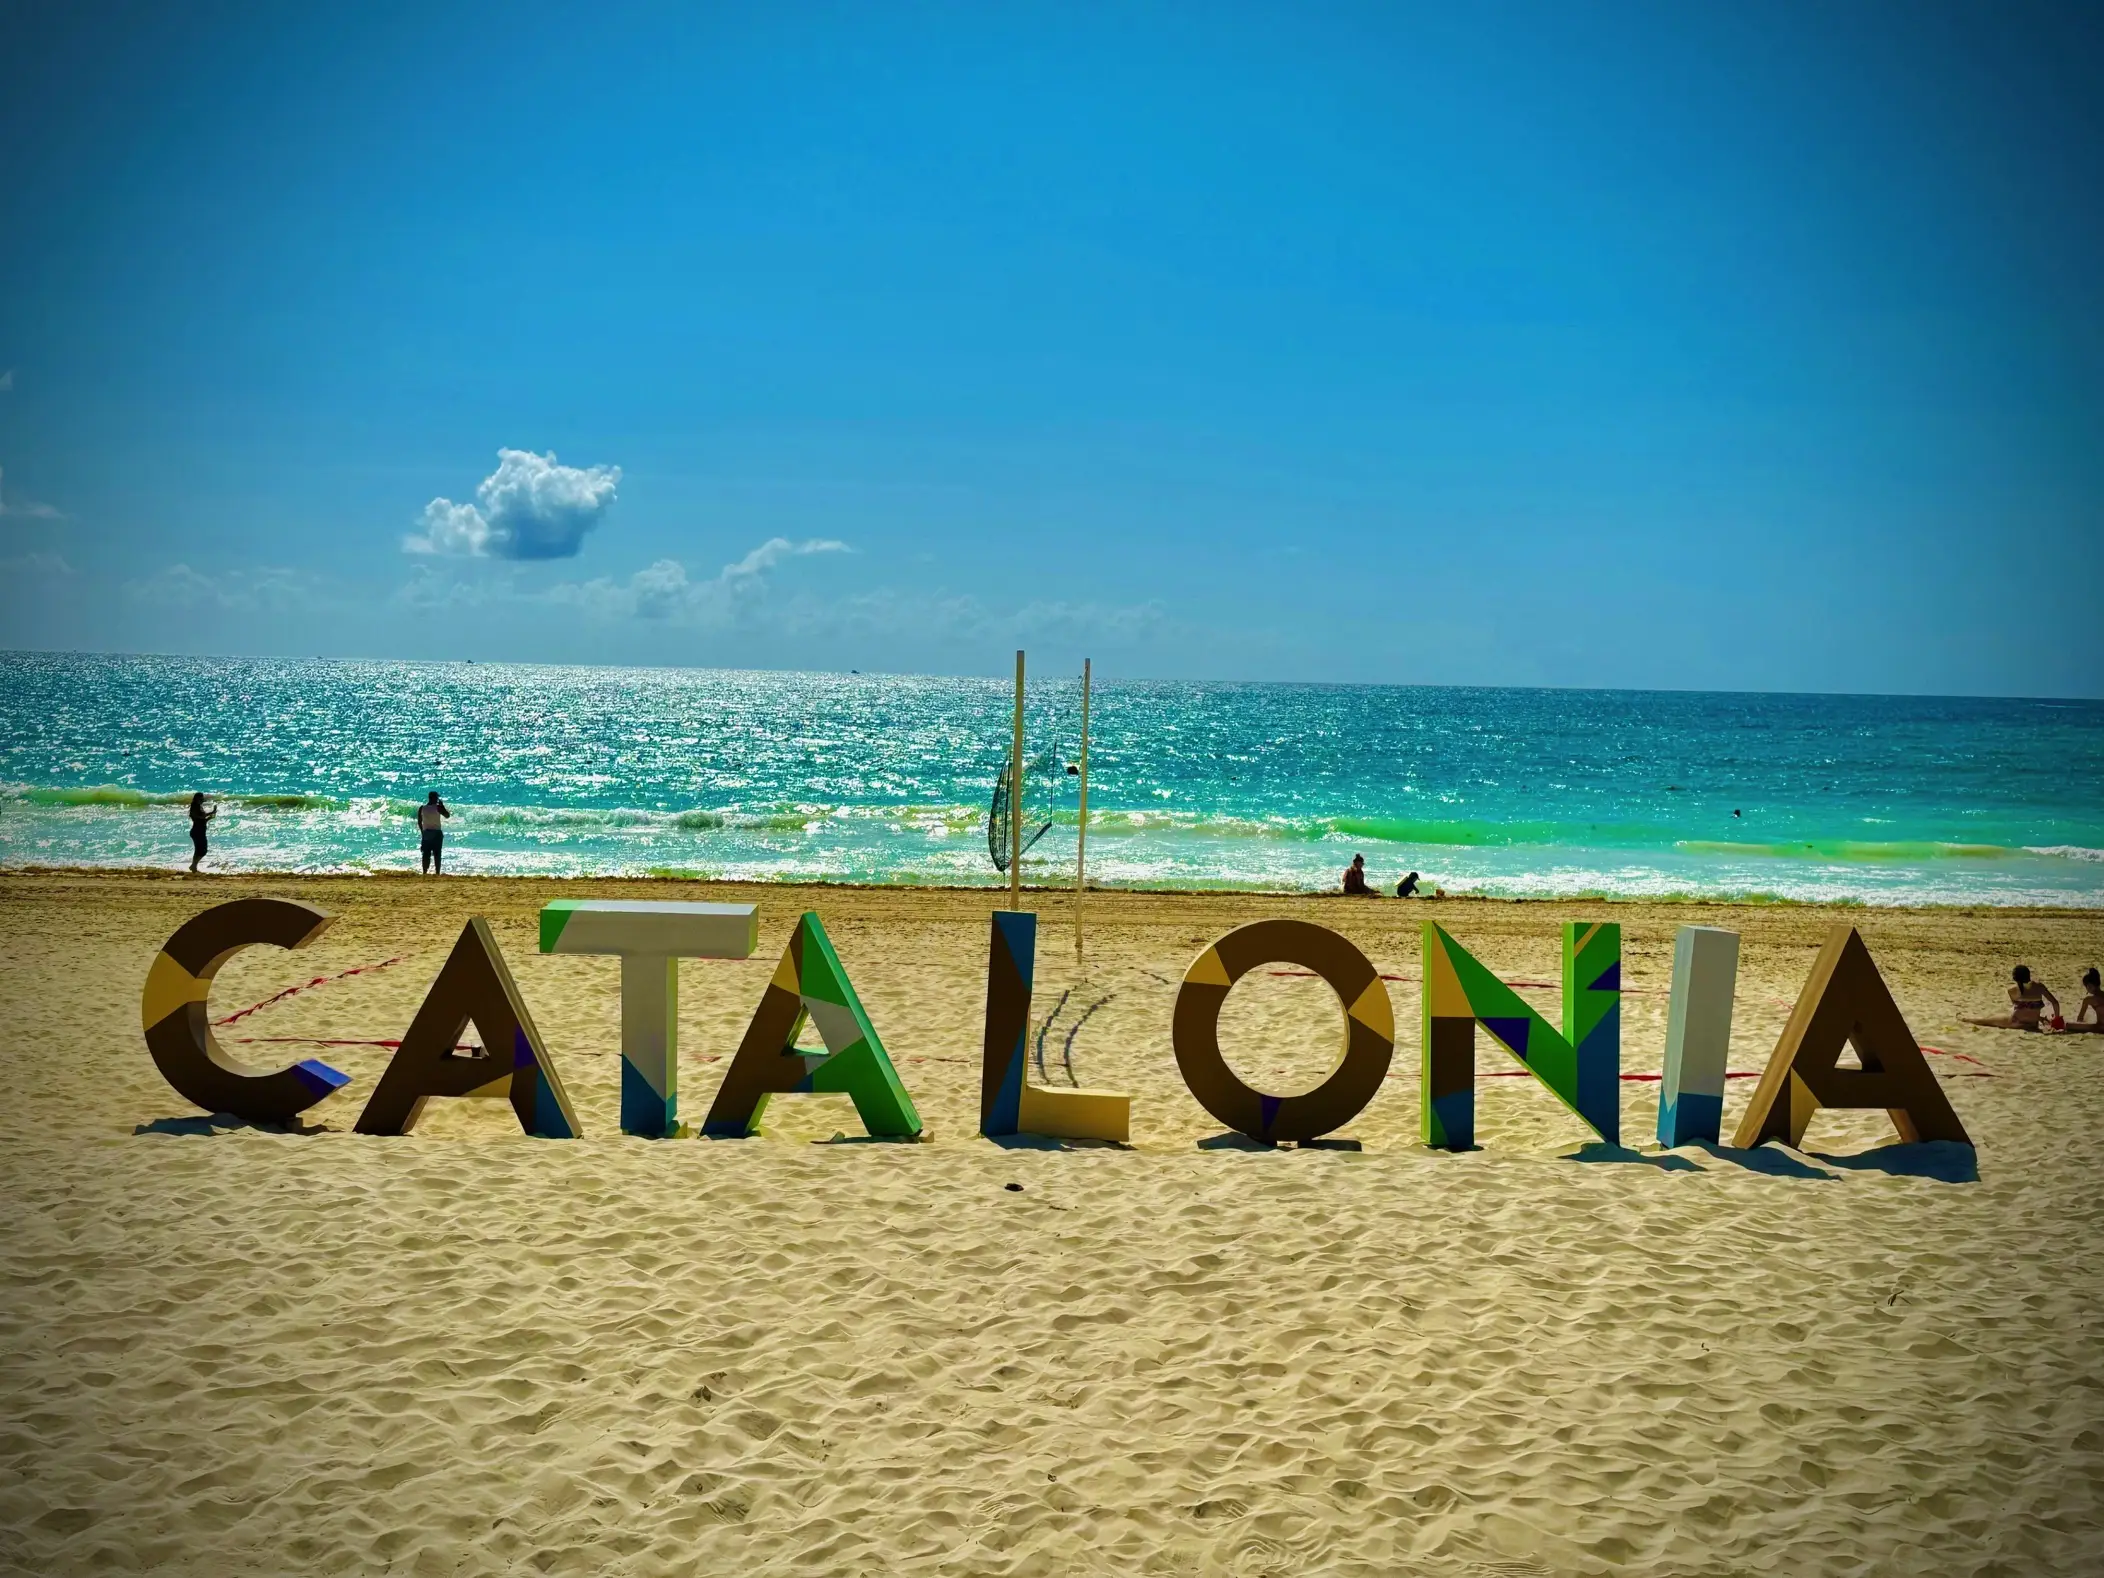 Catalonia Playa Maroma